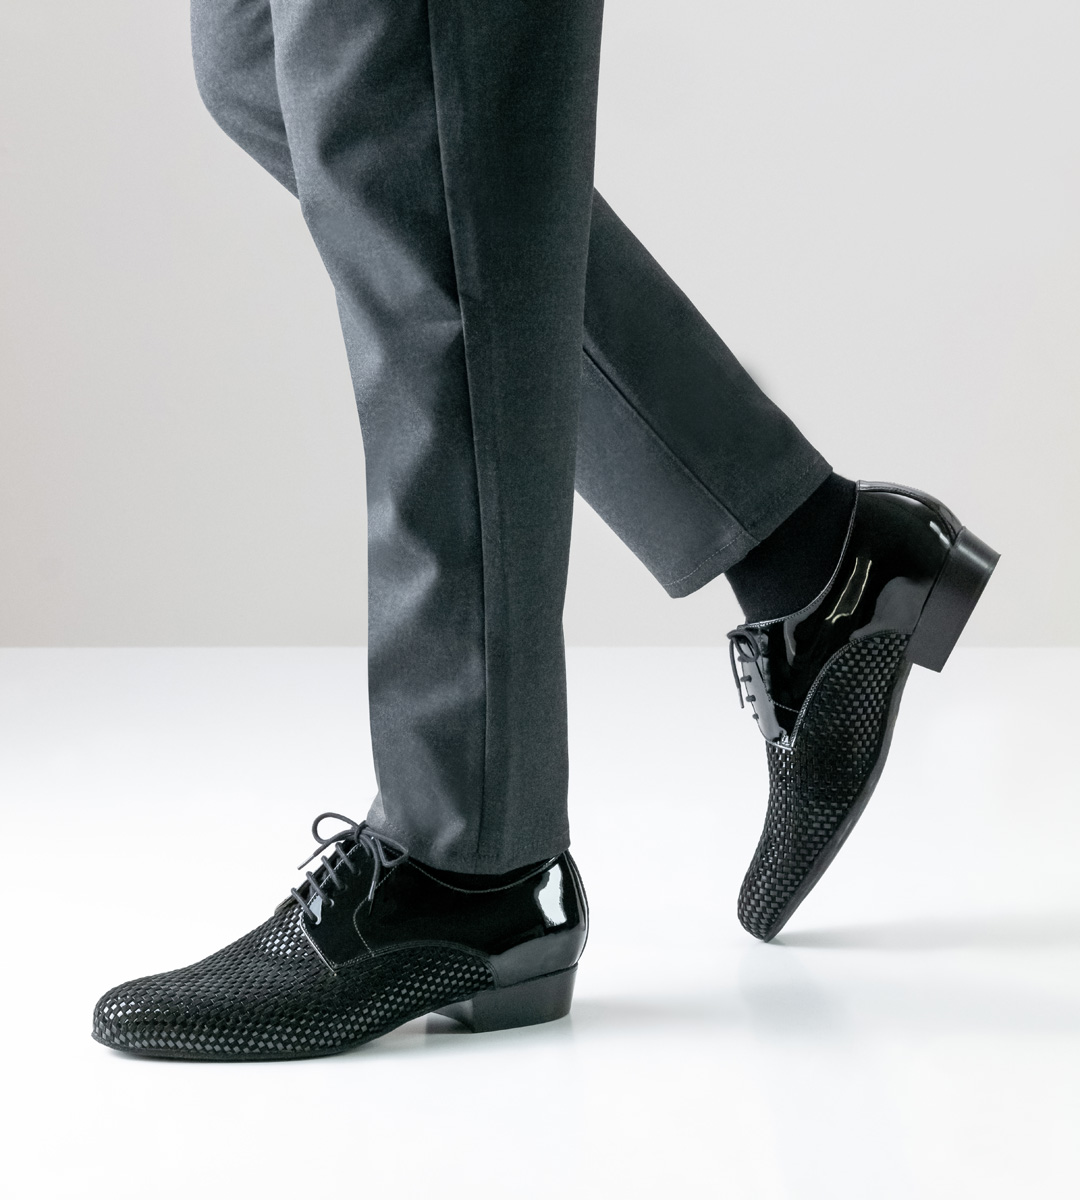 Nueva Epoca Men's Dance Shoe in Black with Grey Trousers